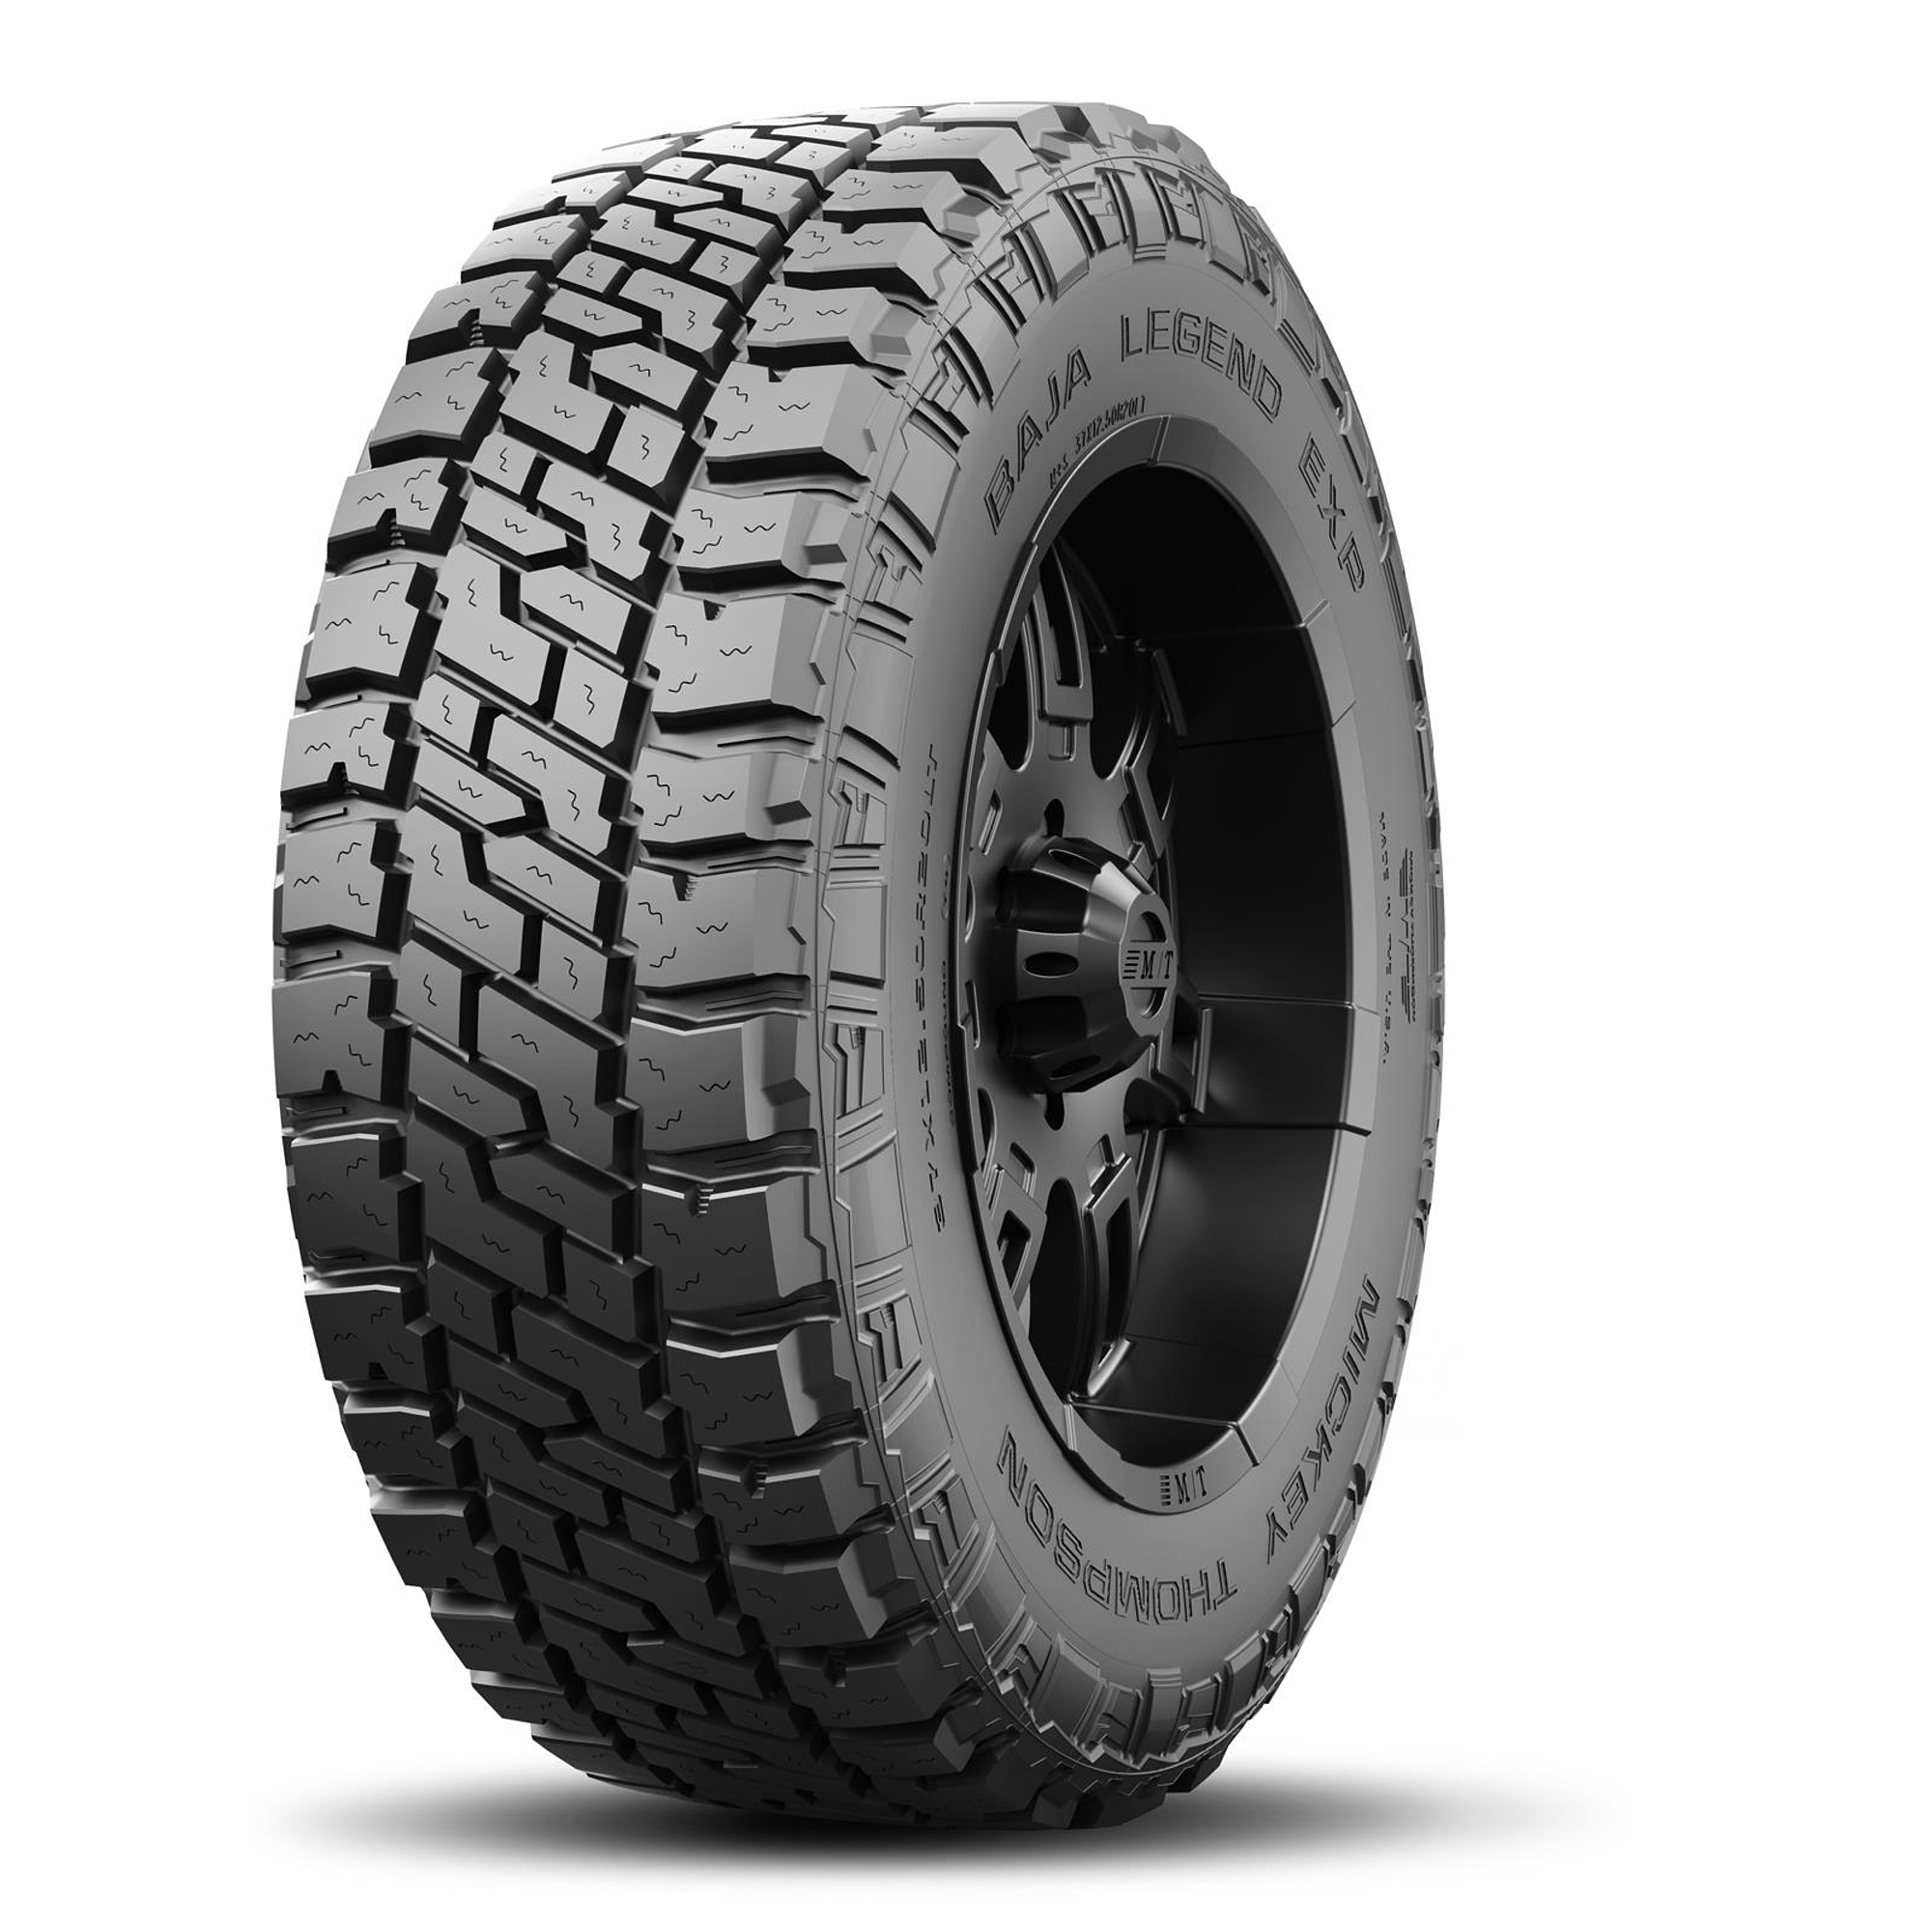 Baja Legend EXP Tire 35X12.50R20LT 125Q - 247556